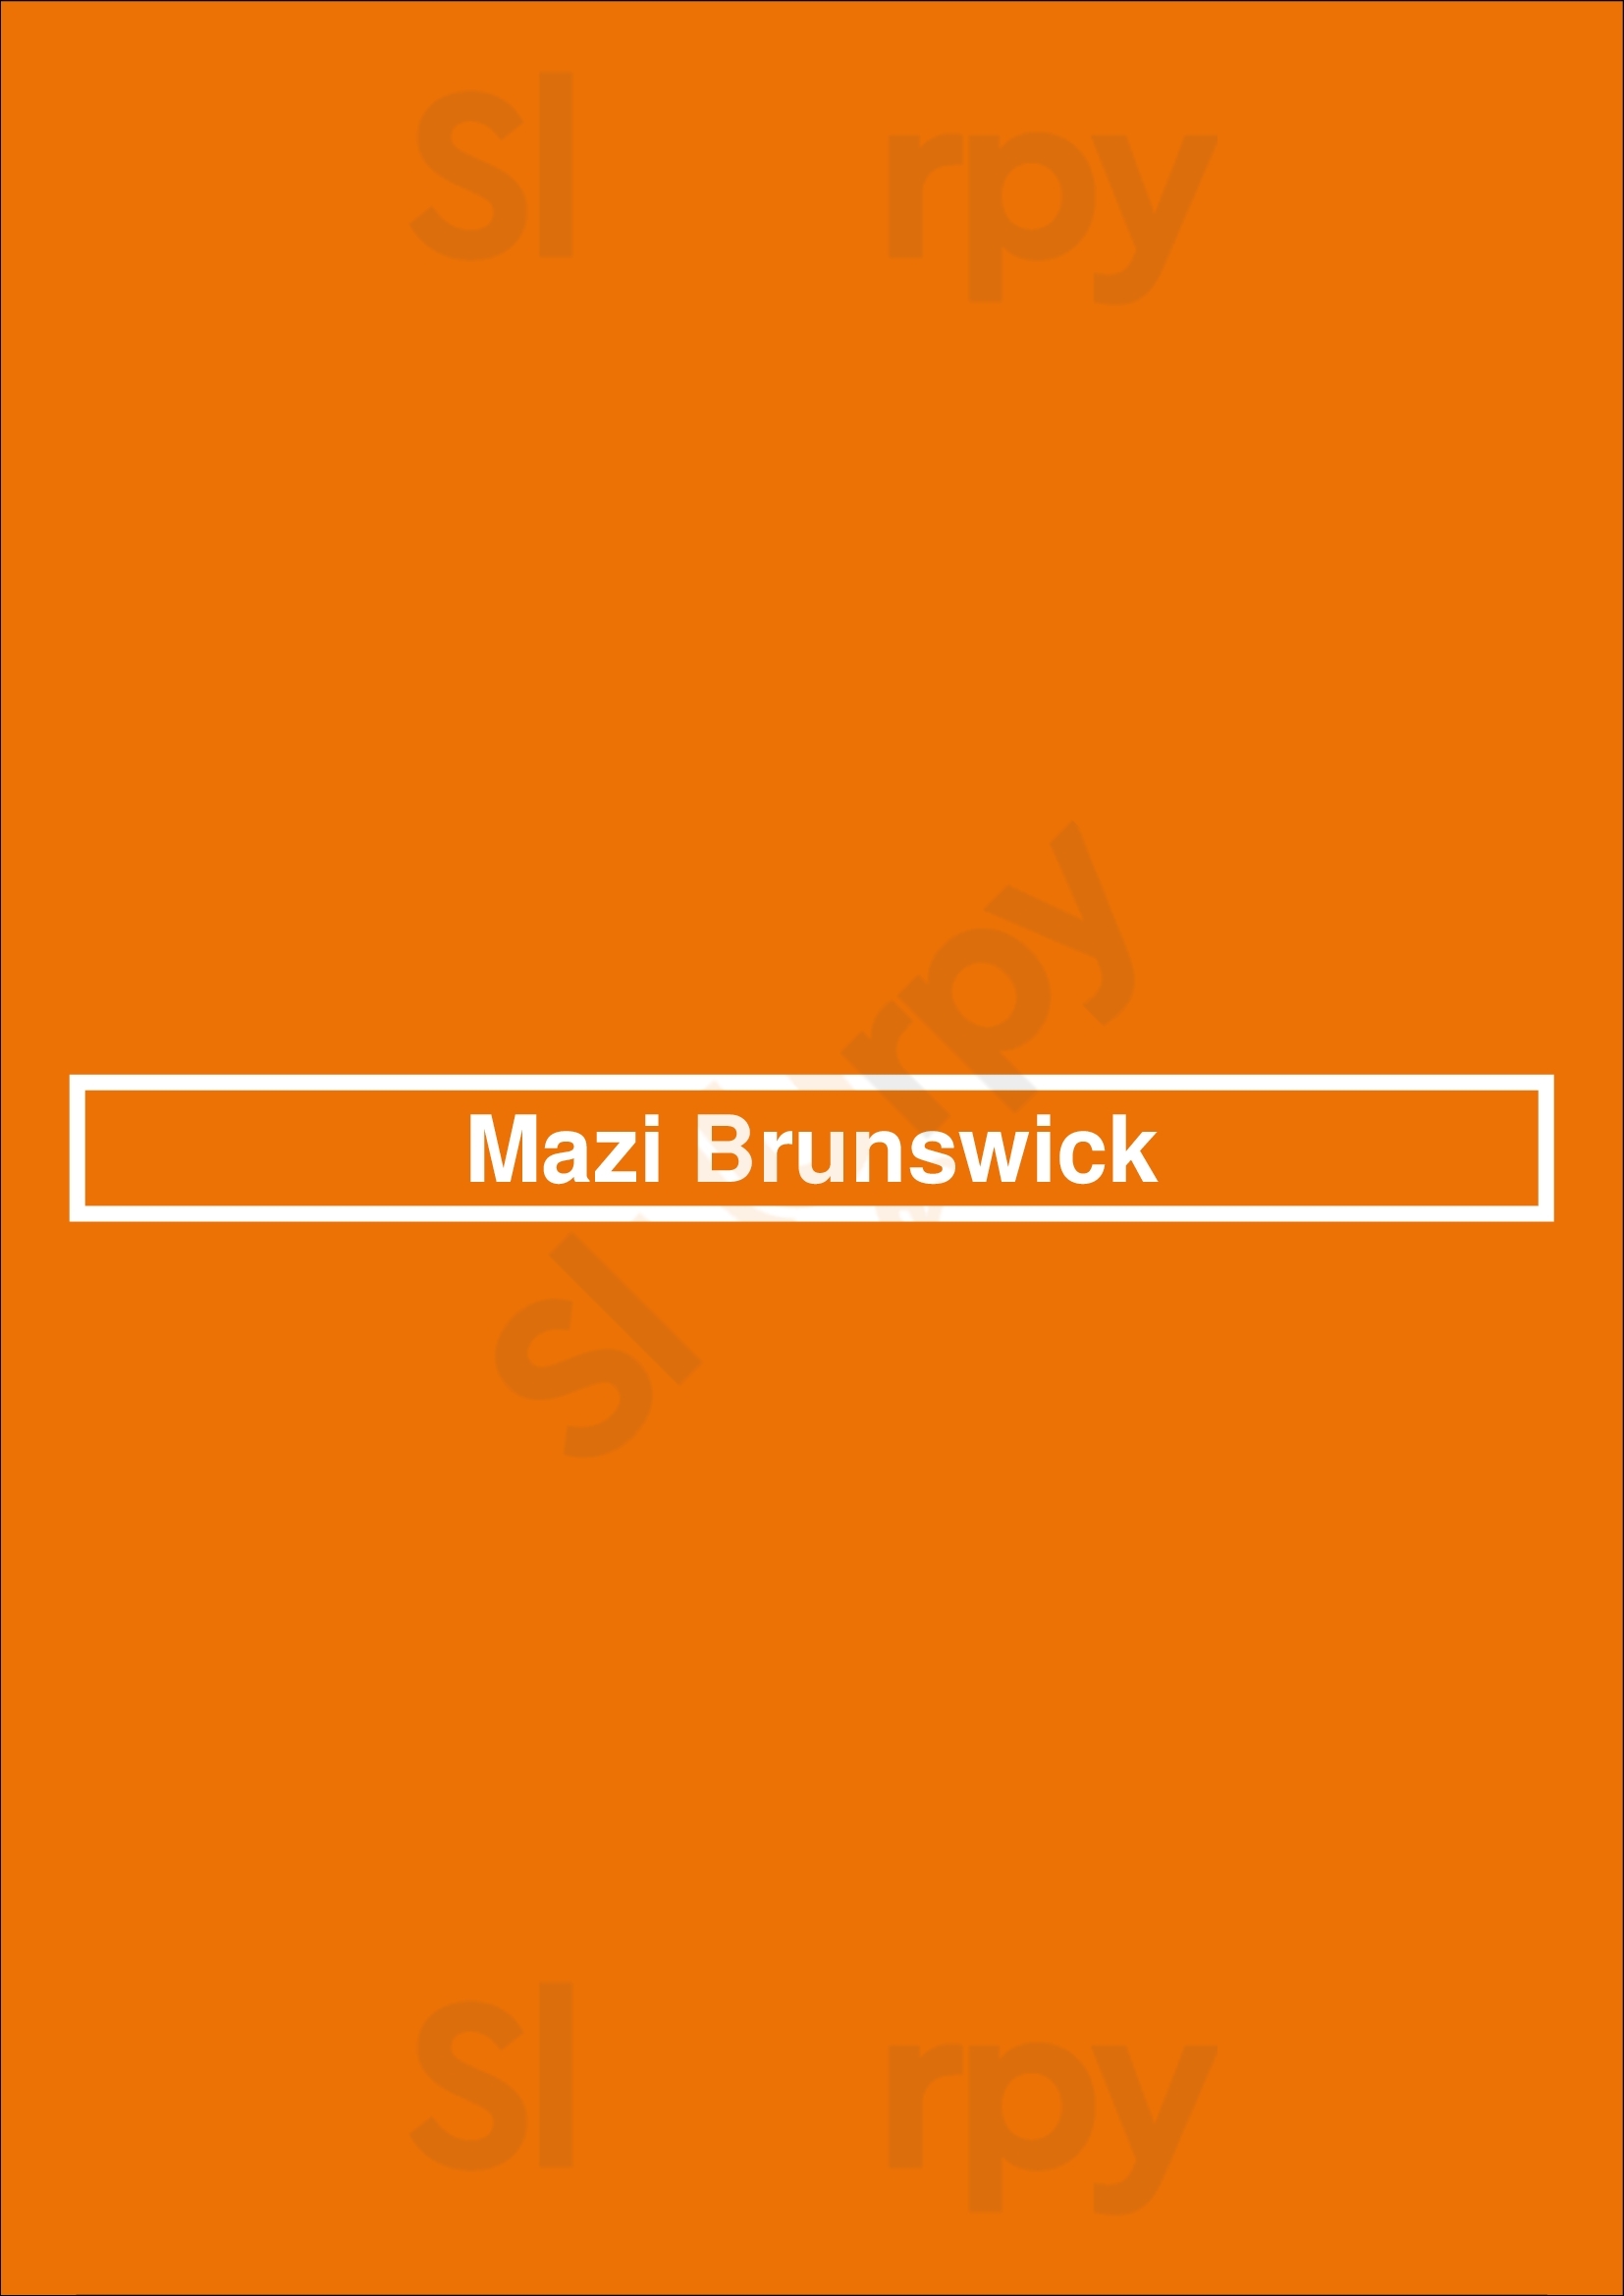 Mazi Brunswick Brunswick Menu - 1